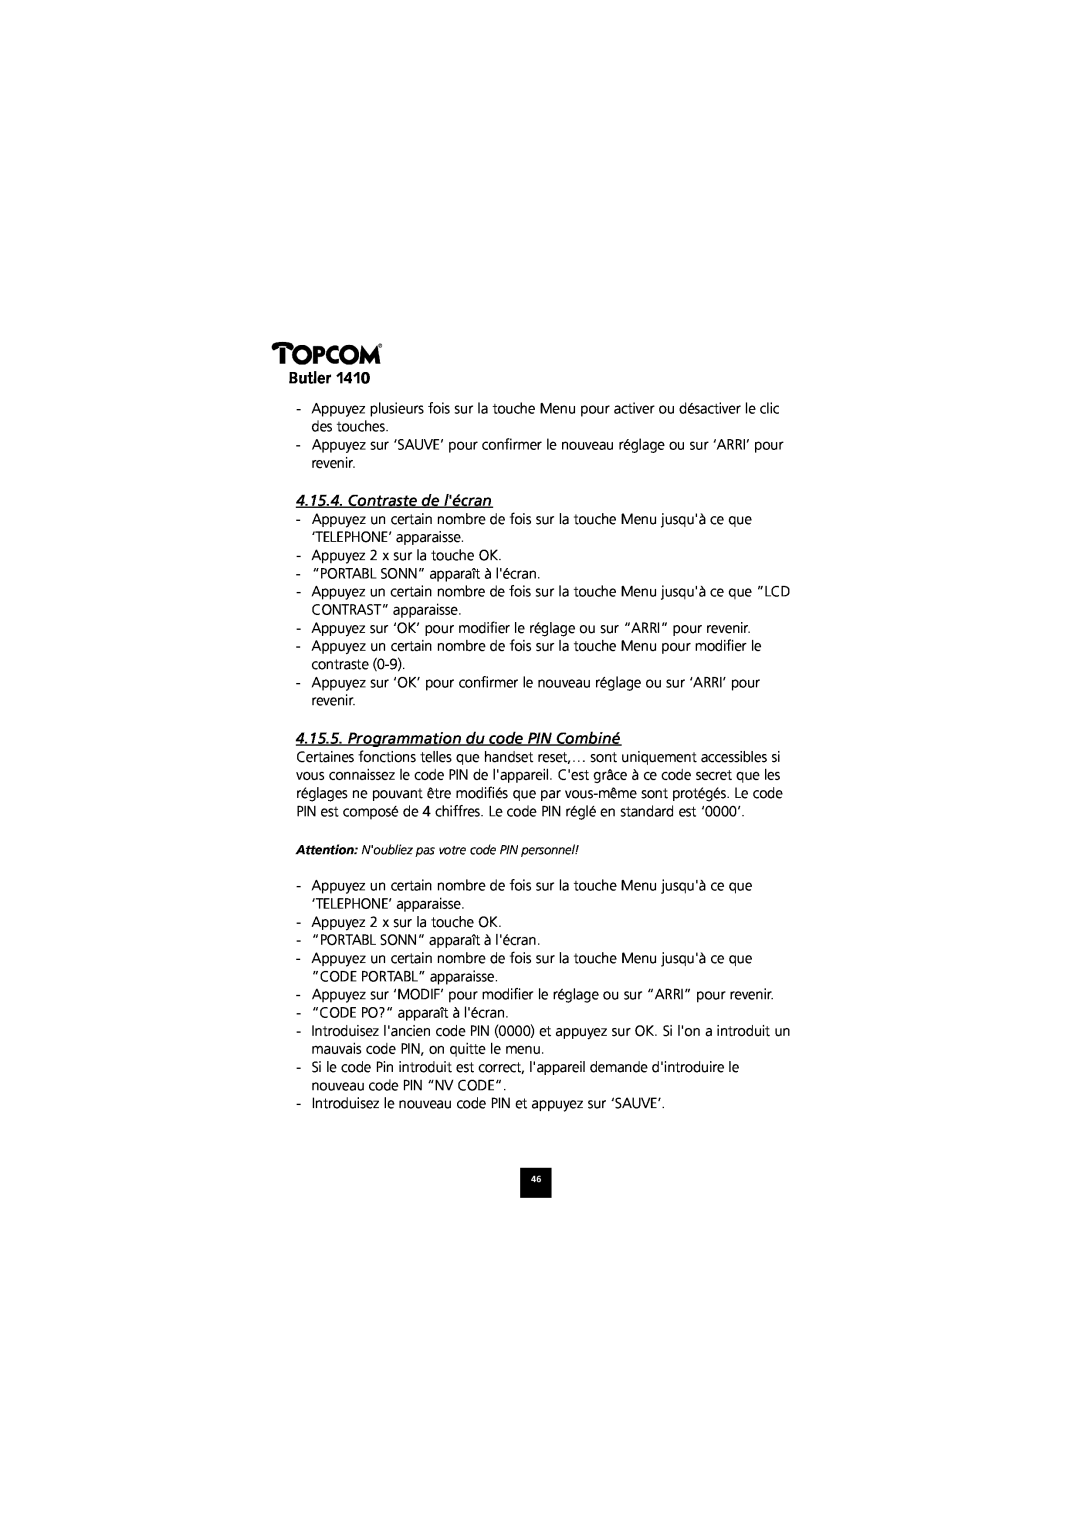 Topcom 1410 manual Contraste de lécran, Programmation du code PIN Combiné, Butler 